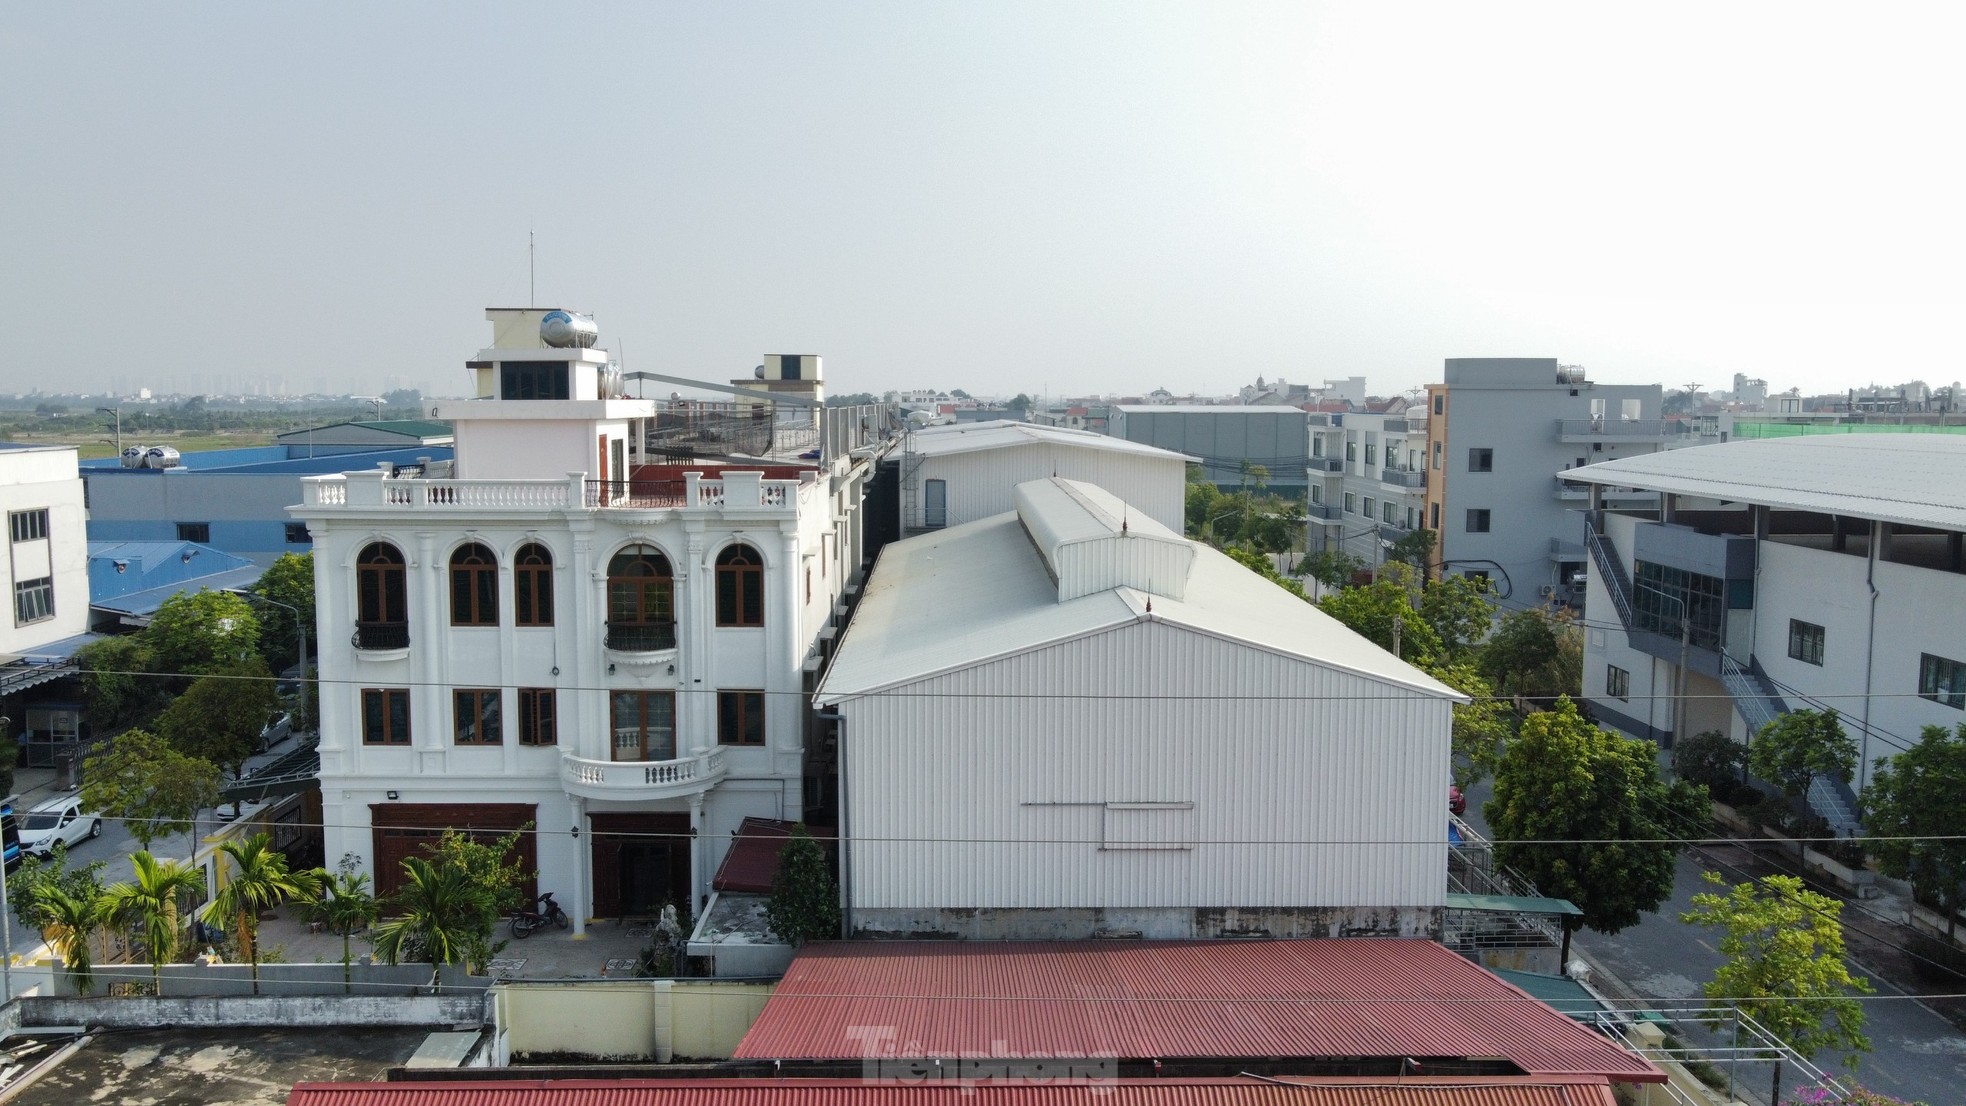 Cận cảnh loạt biệt thự 'mọc' trong cụm công nghiệp làng nghề ở Hà Nội - Ảnh 17.